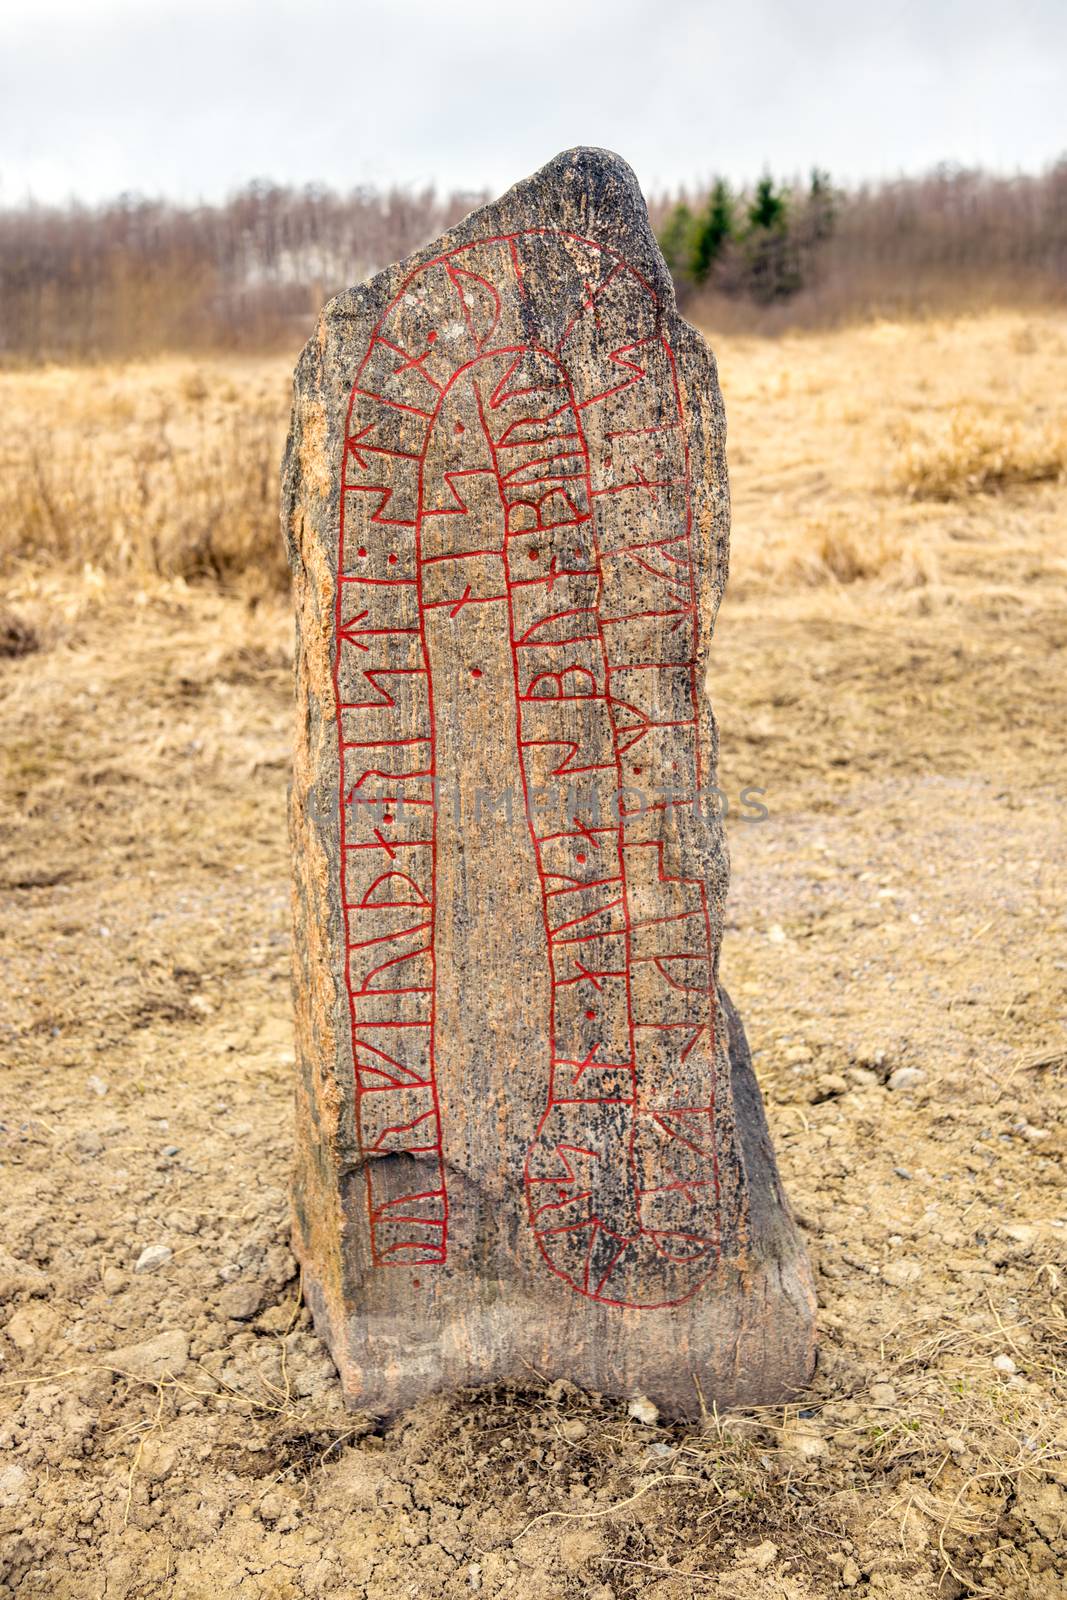 Runestone in a field